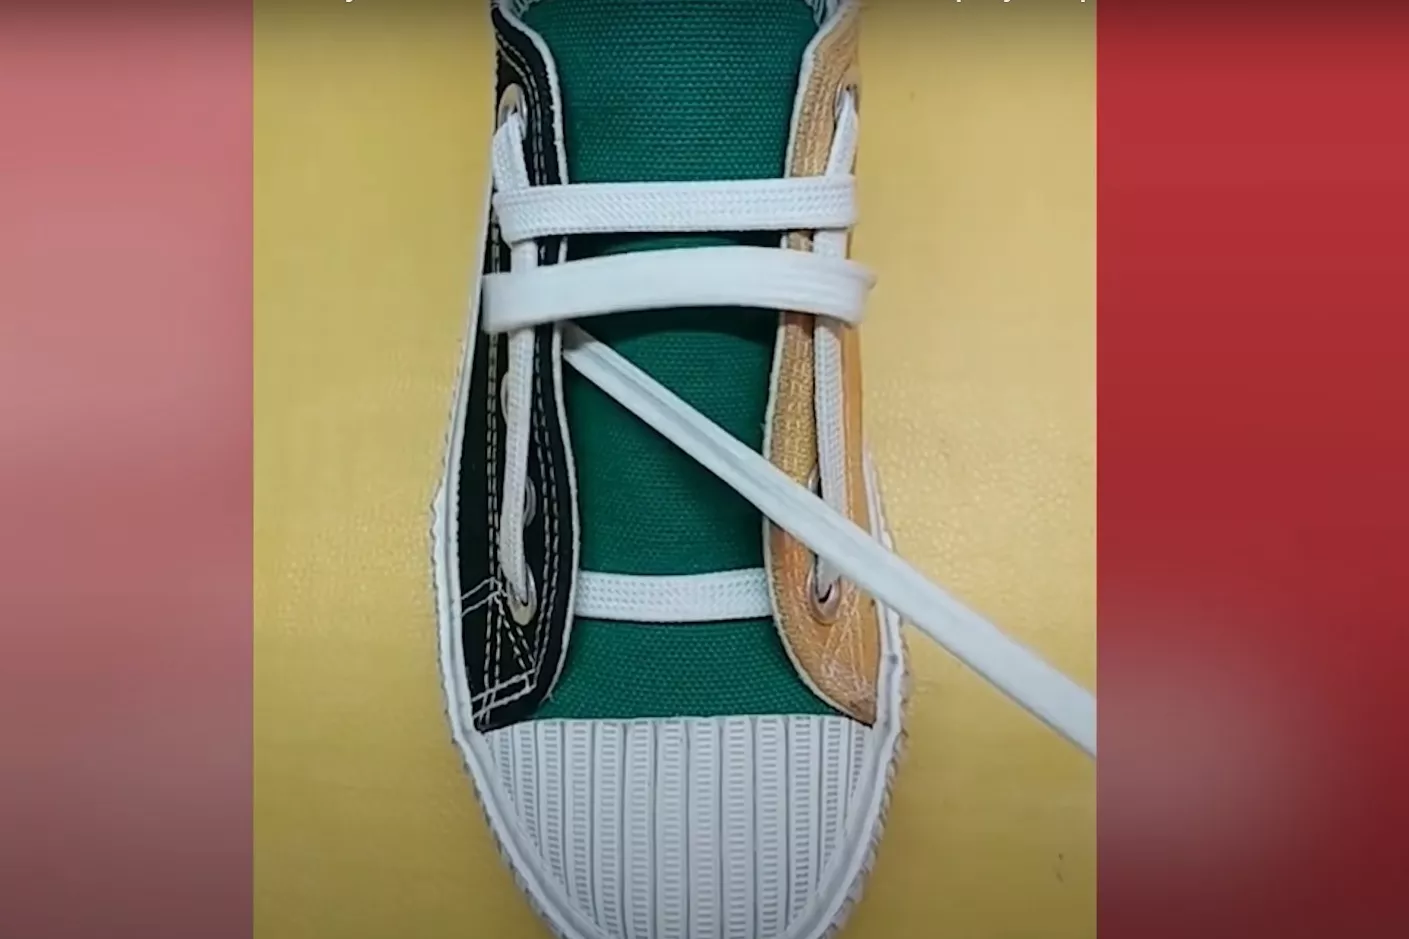 Как завязать шнурки. Фото: скриншот из YouTube/Crafts DIY